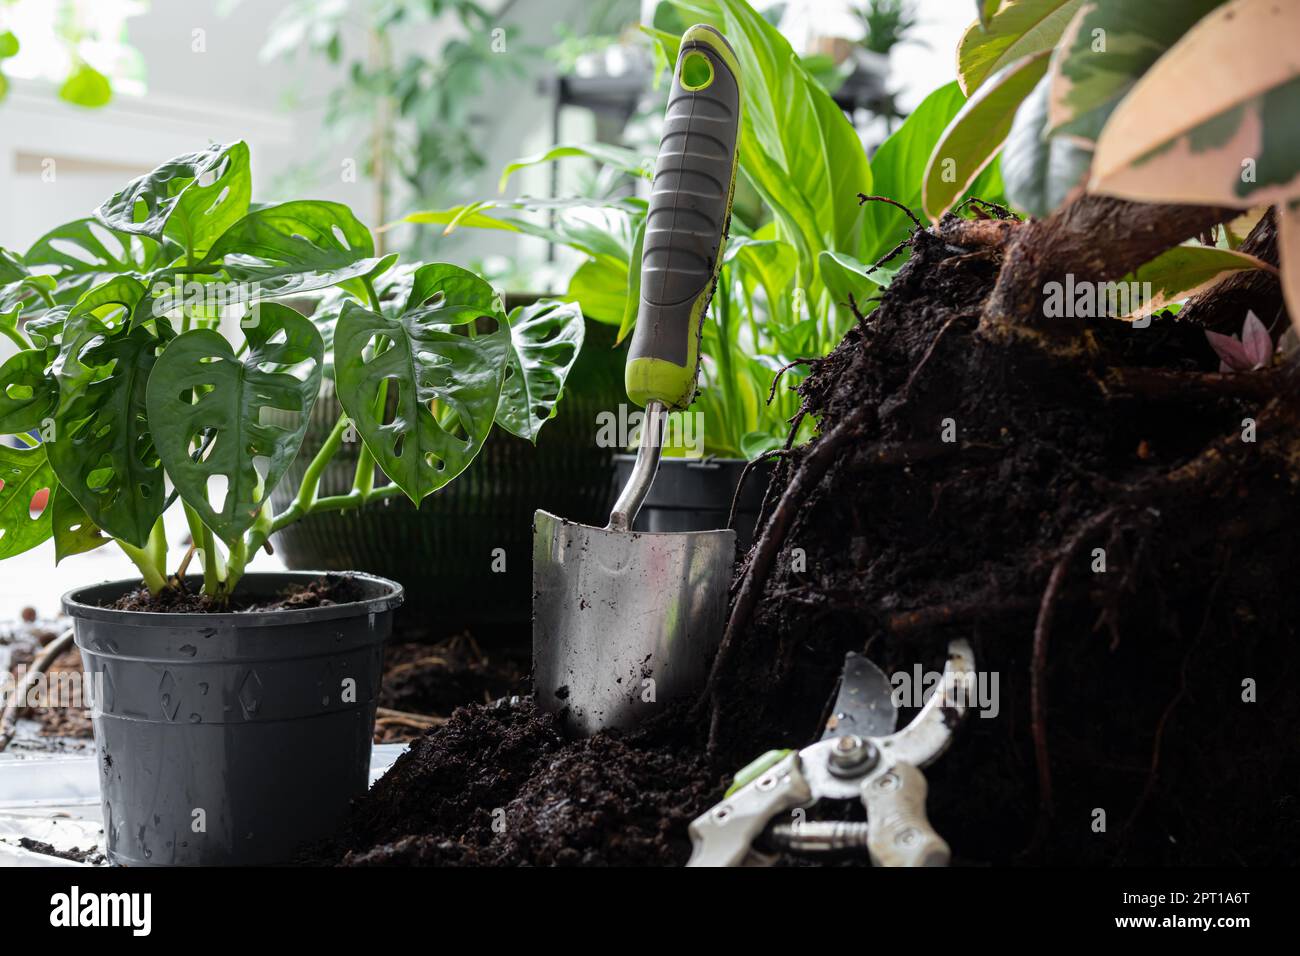 Transplantant des plantes en pots au printemps - ficus, Monstera Monkey, spathiphyllum ou paix Lily, soin des plantes et connexion avec la nature concept Banque D'Images